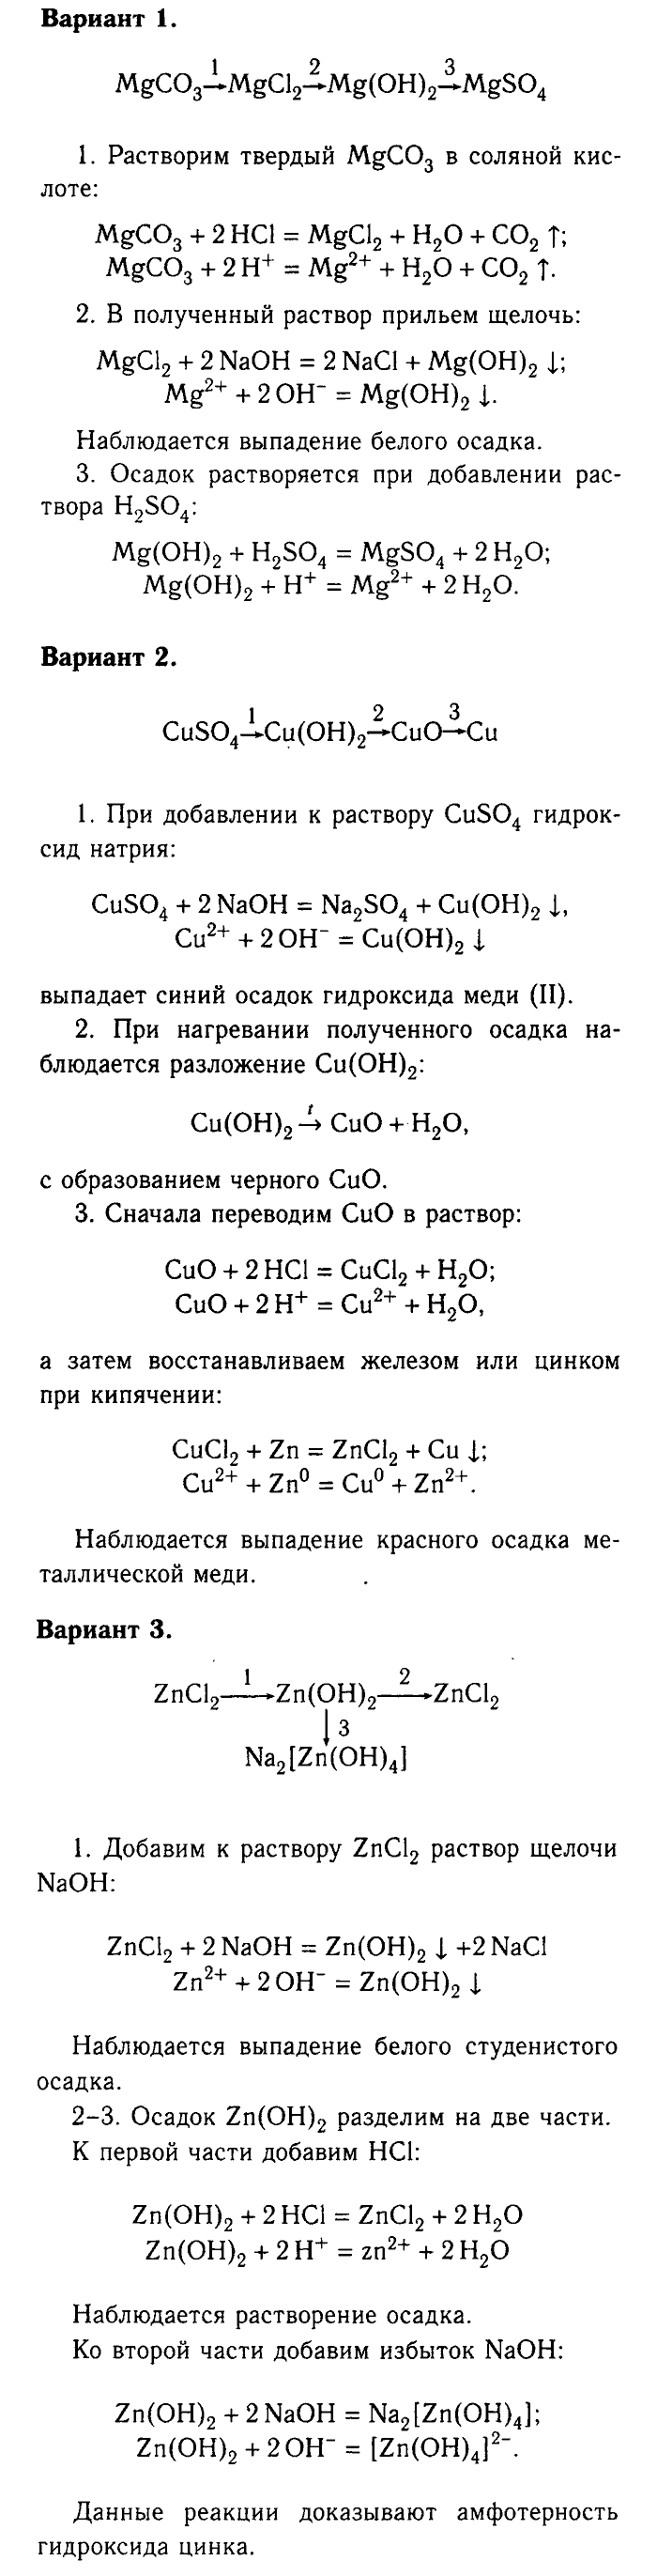 Химия, 9 класс, Габриелян, Лысова, 2002-2012, Практические работы Задача: 1